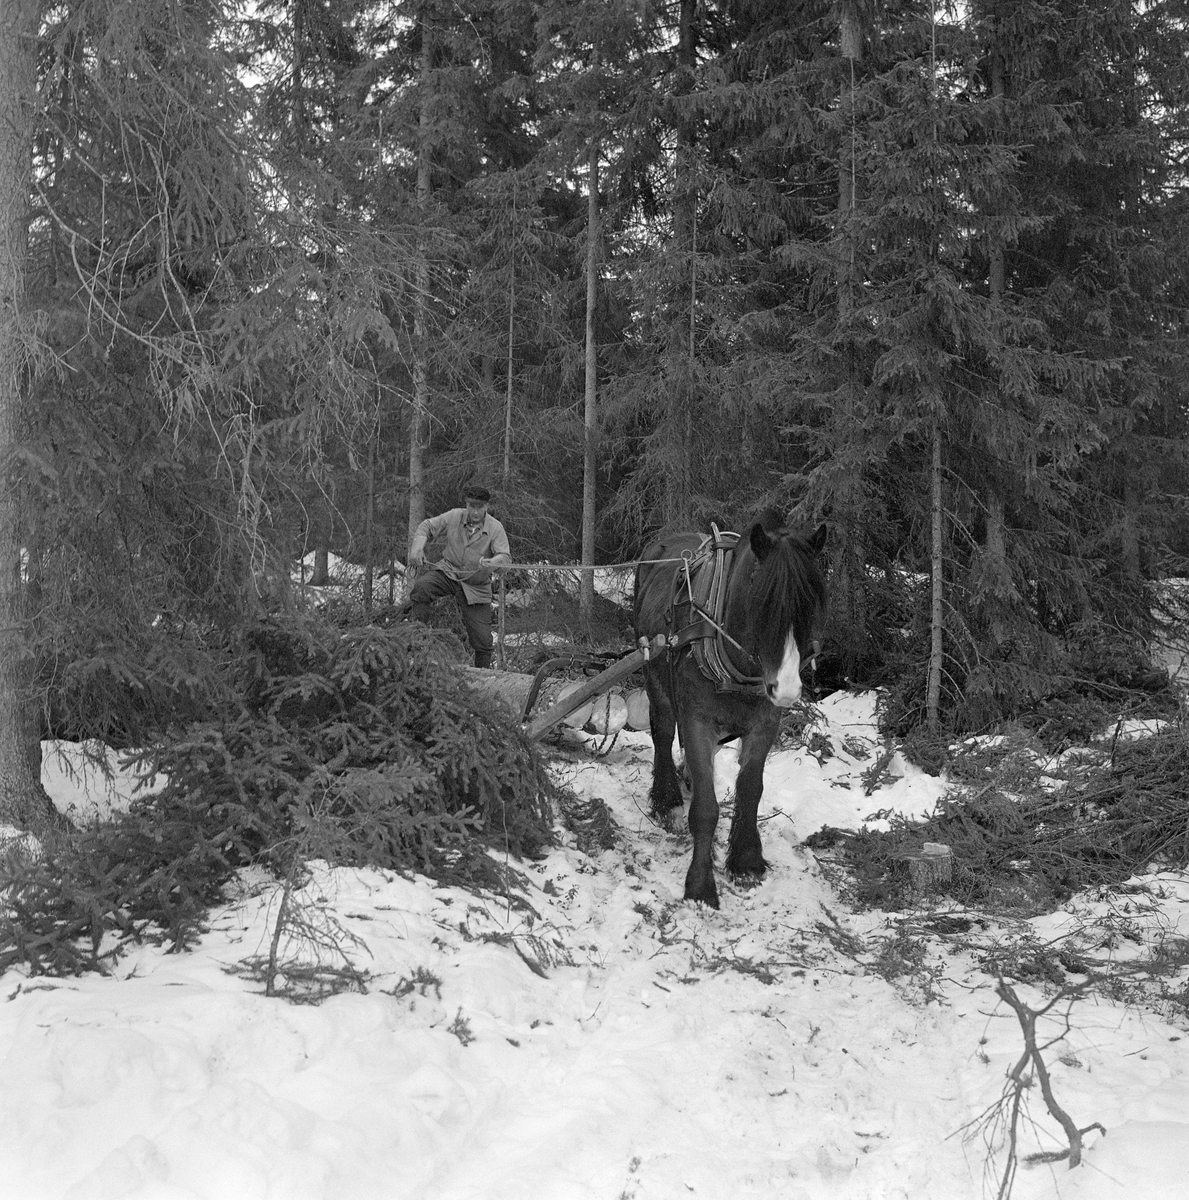 Jørgen Larsen (1919-1988) fra Hernes i Elverum (Hedmark) og skogshesten «Blessen», fotografert under tømmerlunning i skogsområdet Stavåsen vinteren 1971. Arbeidet ble utført med trekkredskapet «bøyledrag». Bøyledraget besto av dragarmer av bjørketre med ei omvendt U-formet jernbøyle som «bank» (forbindelsesledd) mellom de bakre delene av trekkstengene.  Disse er beslått på undersida, slik at de fungerte som meier. Jernbøyla var utstyrt med jernlenker (snarekjetting) som stokkendene ble stroppet i, slik at det bare var bakendene som ble slept på bakken.  Bøyledraget ble vanlig i norsk skogbruk i åra etter 2. verdenskrig, fortrinnsvis til lunning (samling av stokker på et hogstfelt i ei «lunne», der tømmeret seinere kunne hentes med en slede som hadde større lastekapasitet og kjøres til fløtingsvassdrag eller bilveg).